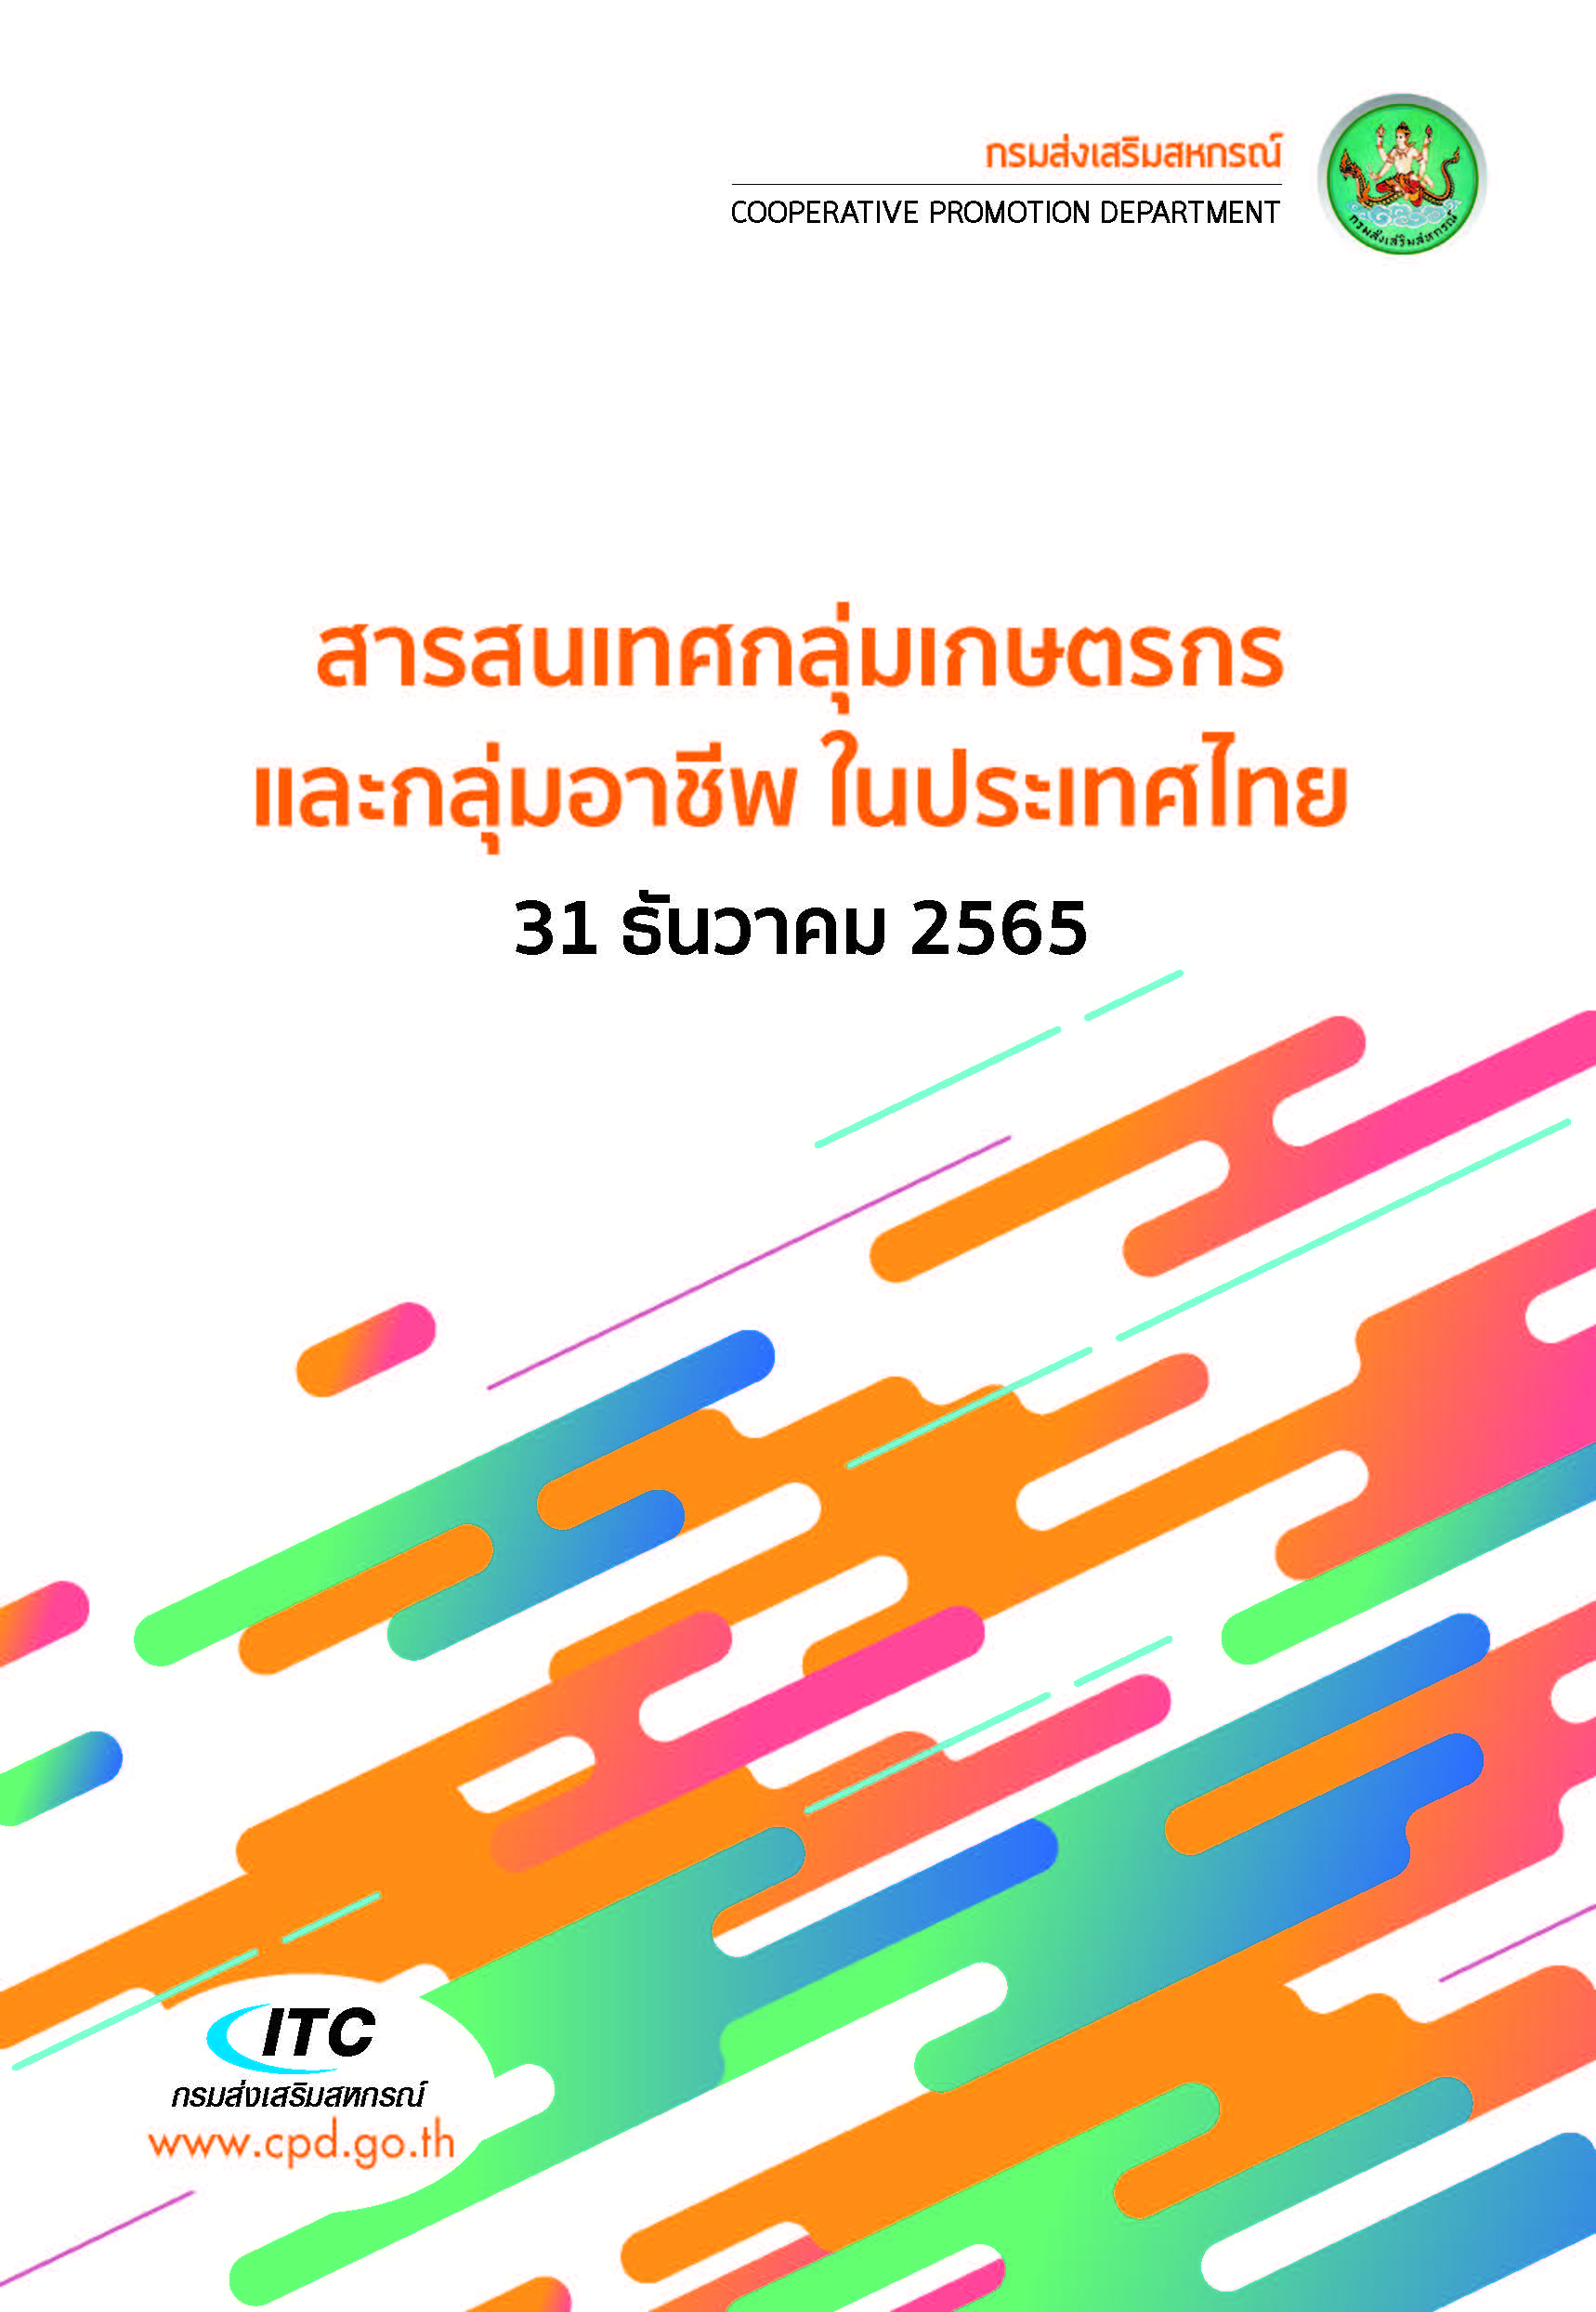 e book agri thai 311265